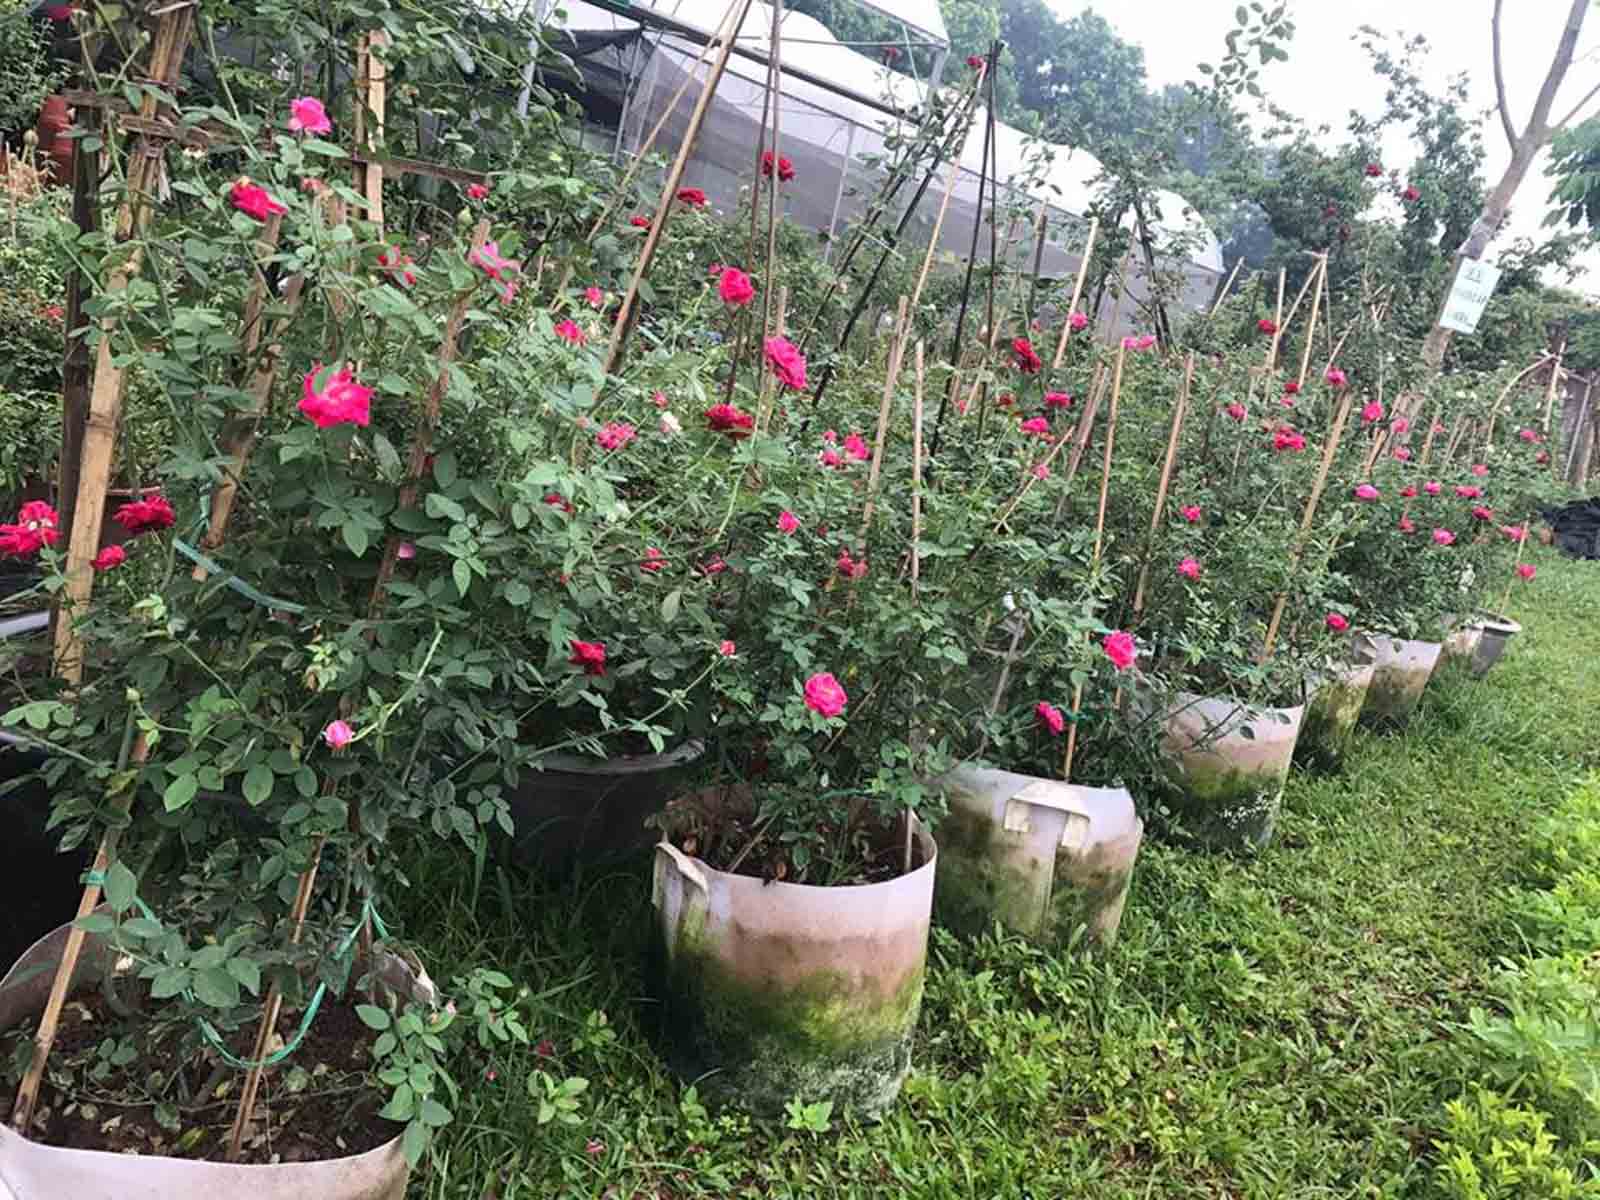 nhà vườn bán hoa hồng quế huế đỏ